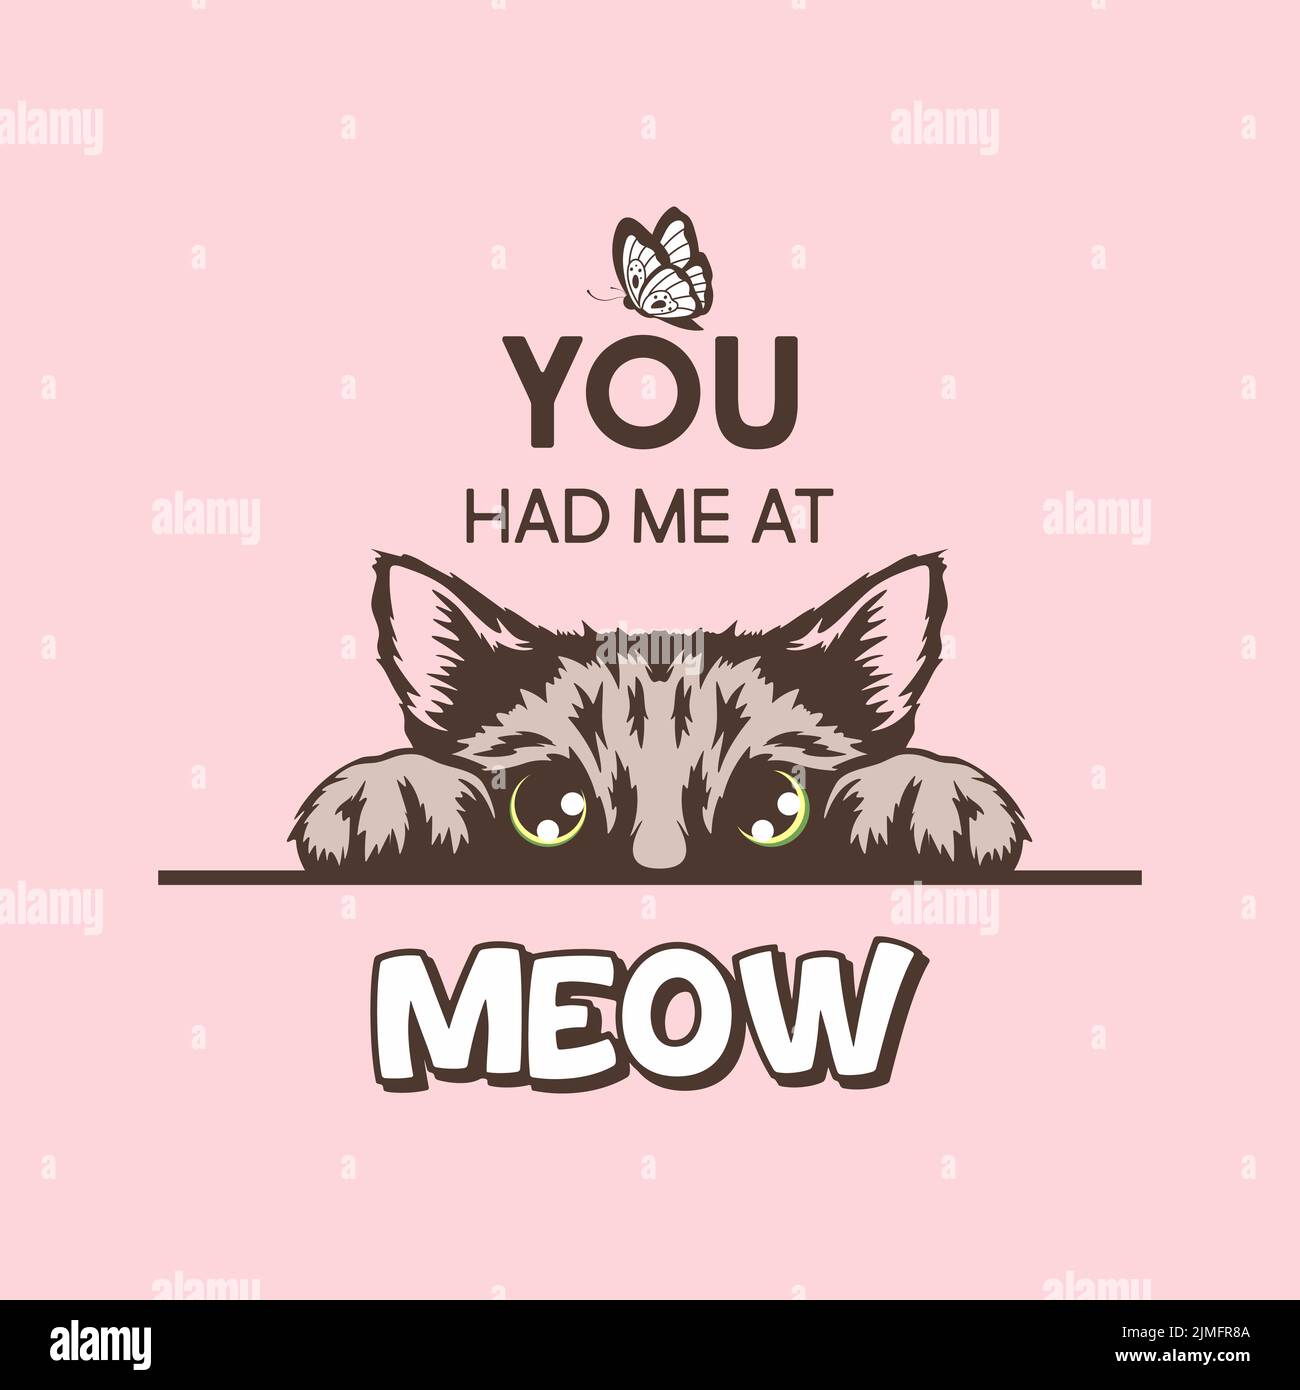 Du Hattest Mich In Meow. Vektor-Poster mit Katze Zitat und Hand gezeichnet Schwarz und Weiß versteckt Peeking Cute Kätzchen auf rosa Hintergrund. Funny Kitten ist Peeking Stock Vektor